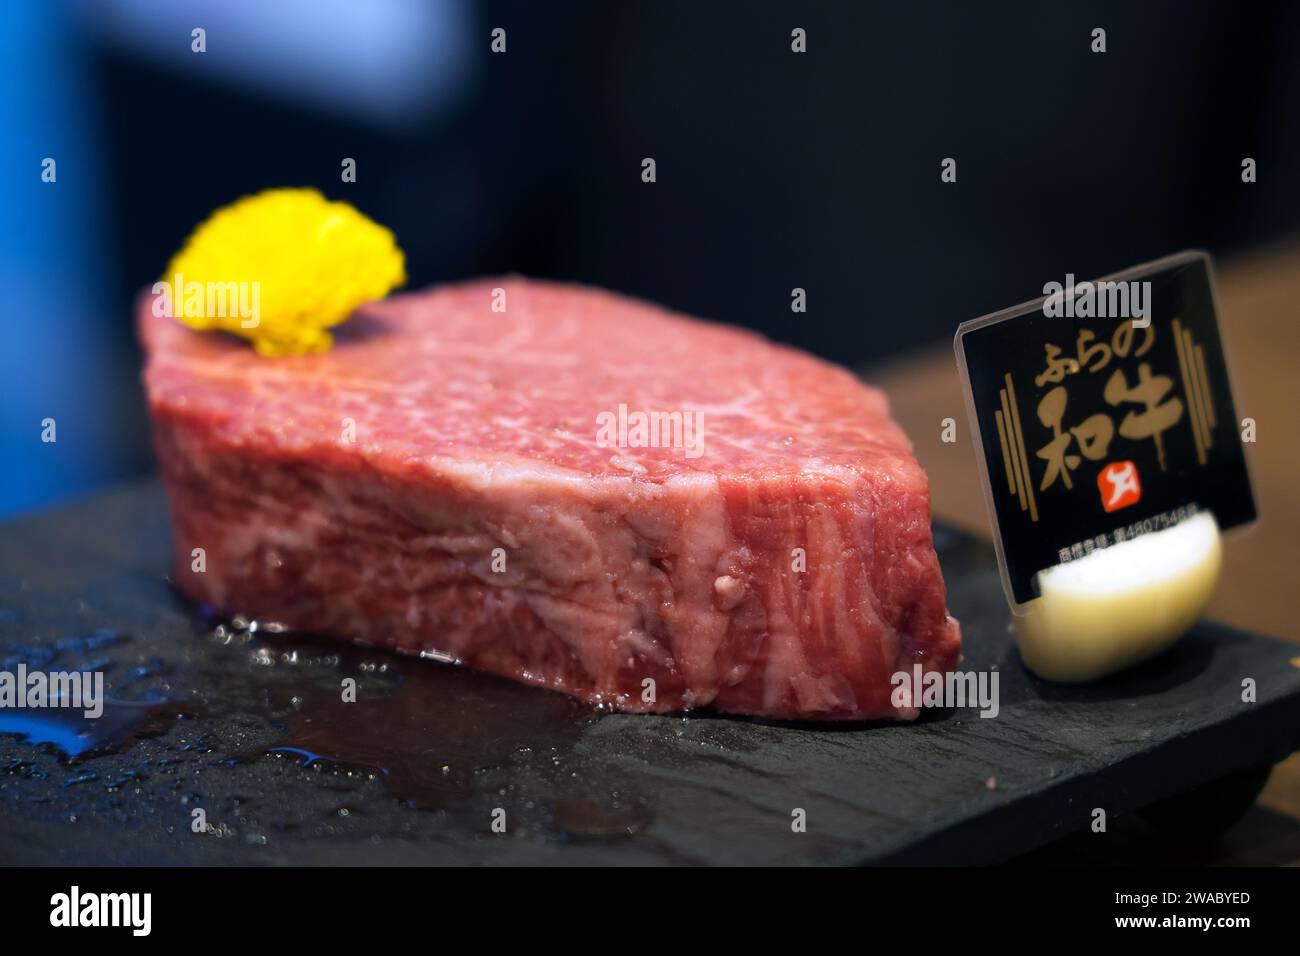 Rohes japanisches Wagyu-Fleisch/Steak, teure Delikatesse auch Matsusaka-Rindfleisch/Kobe-Rindfleisch/Yonezawa-Rindfleisch genannt, Tokio, Japan Stockfoto